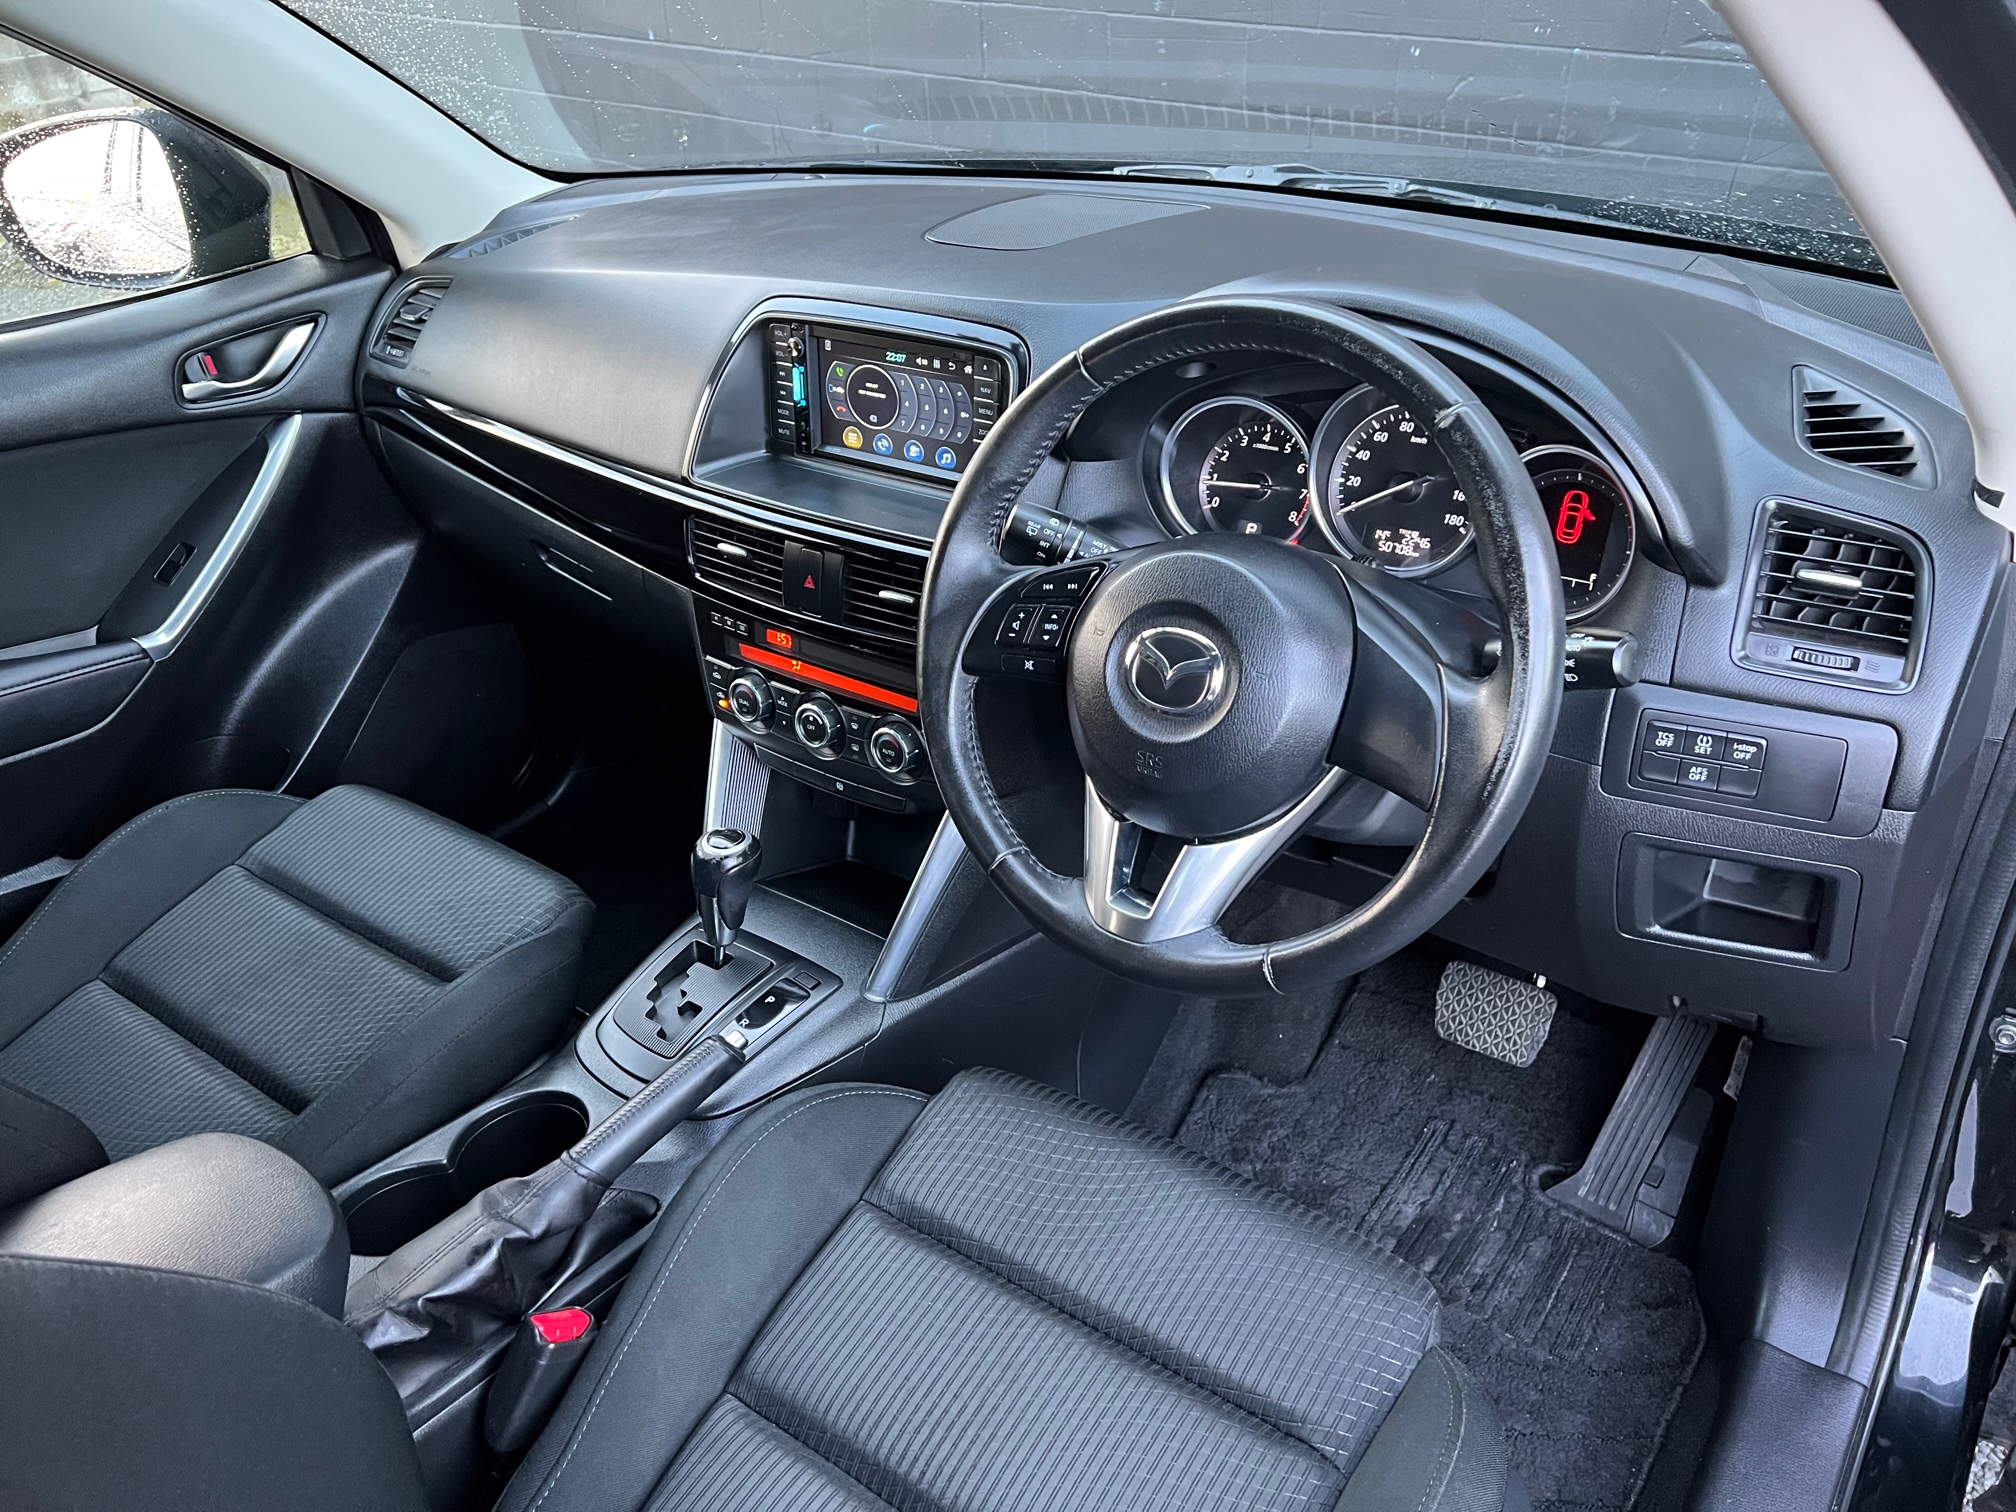 Mazda CX-5 2013 Image 18